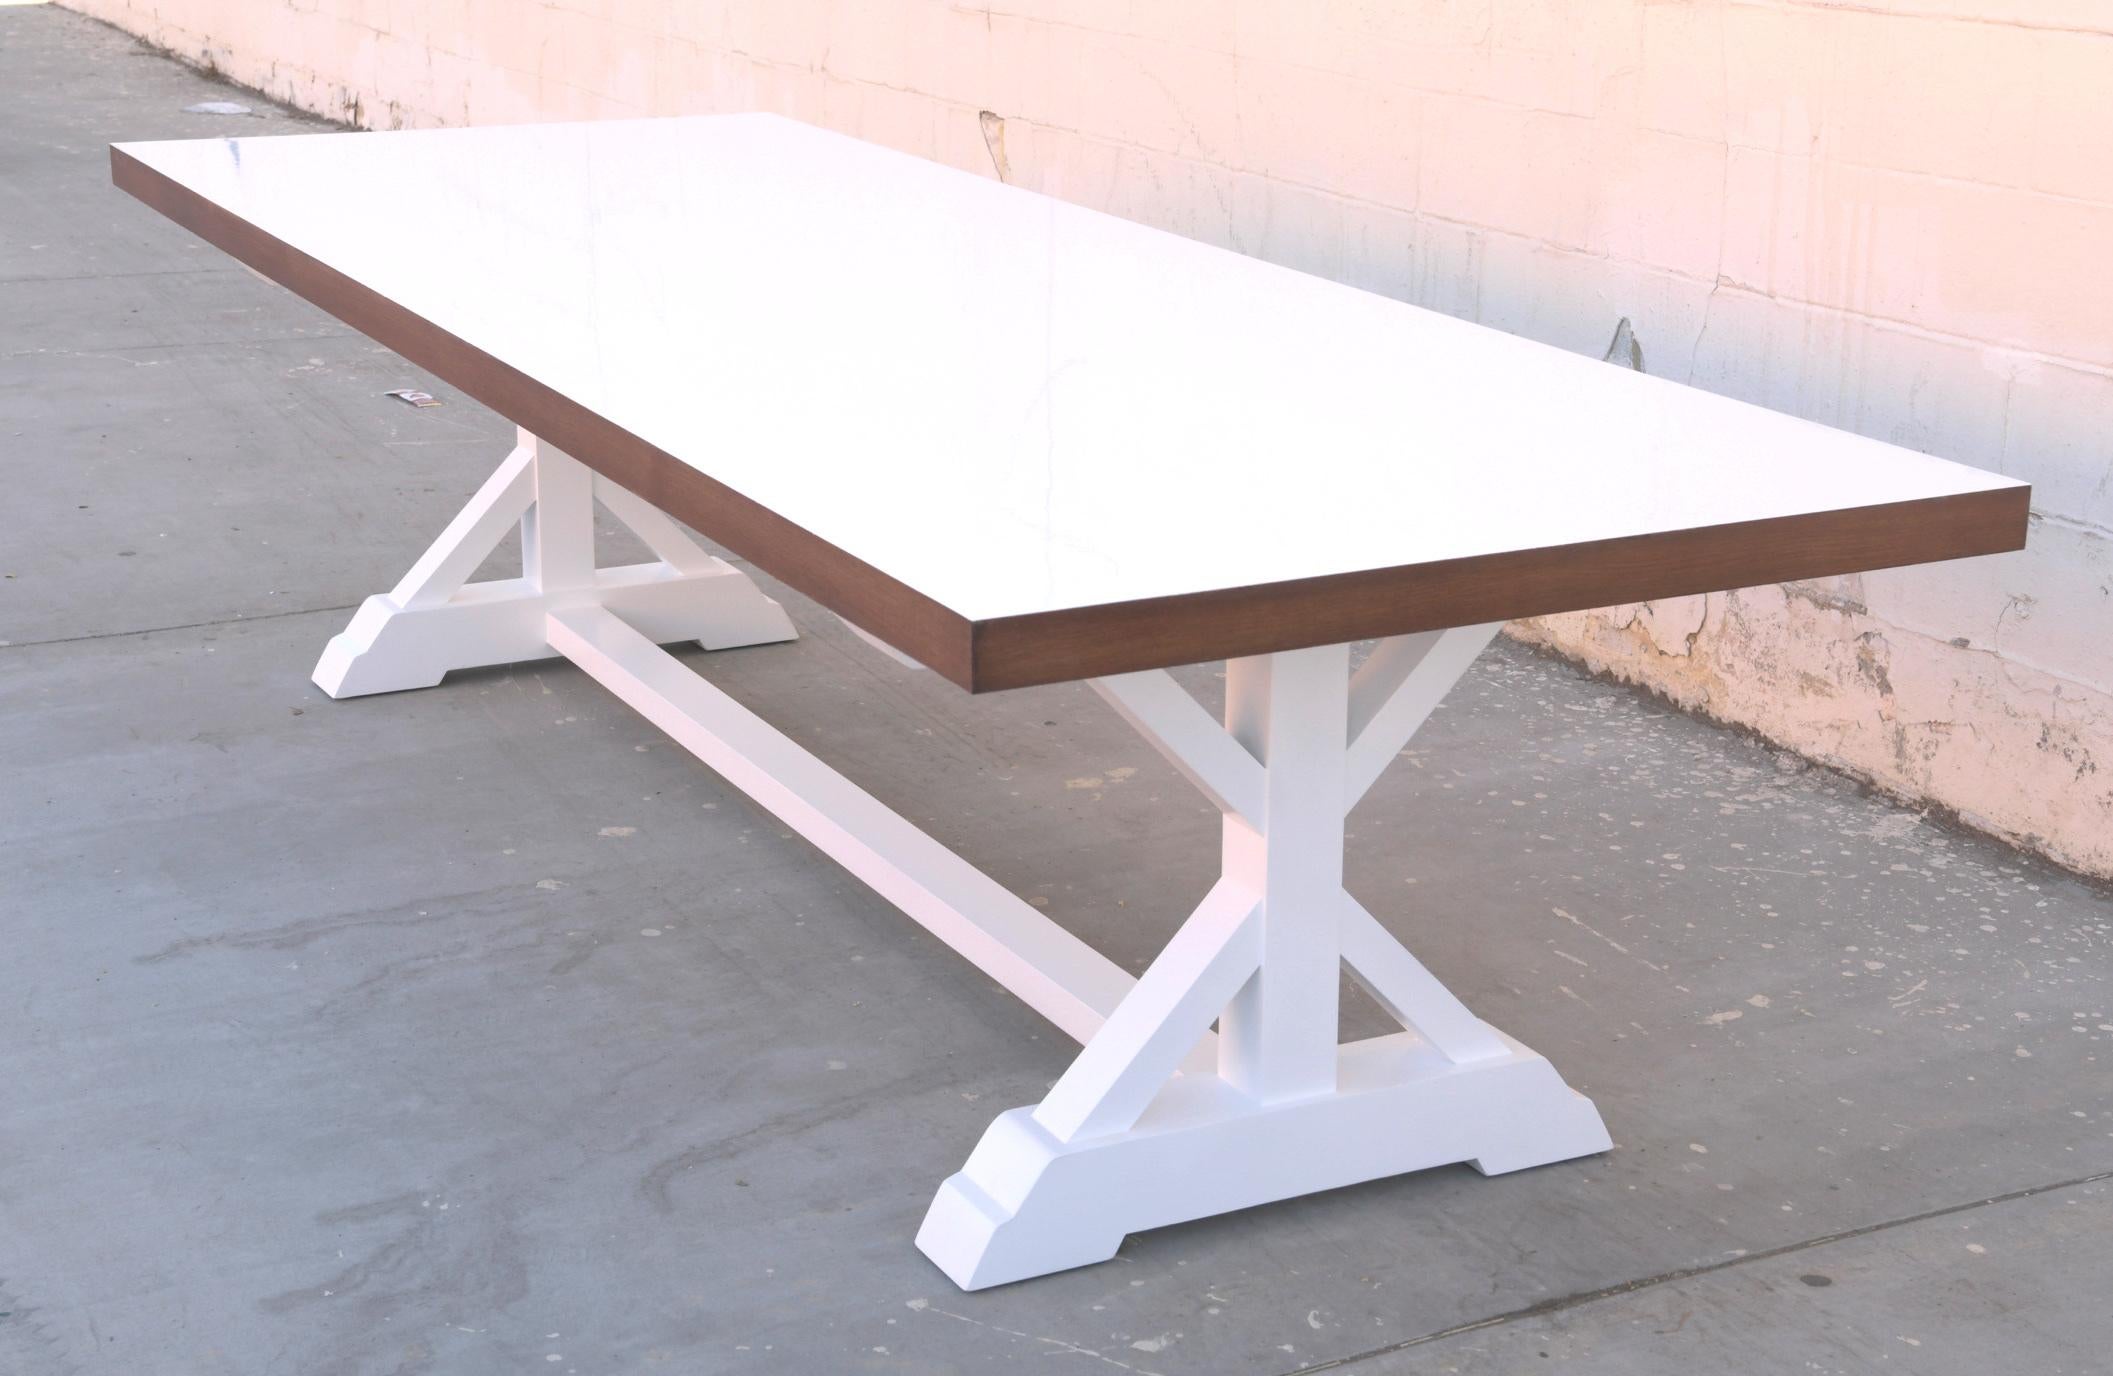 Dieser maßgefertigte Esstisch ist aus Eichenholz mit weiß lackierter Platte und Untergestell gefertigt.

Hier ist er in 120